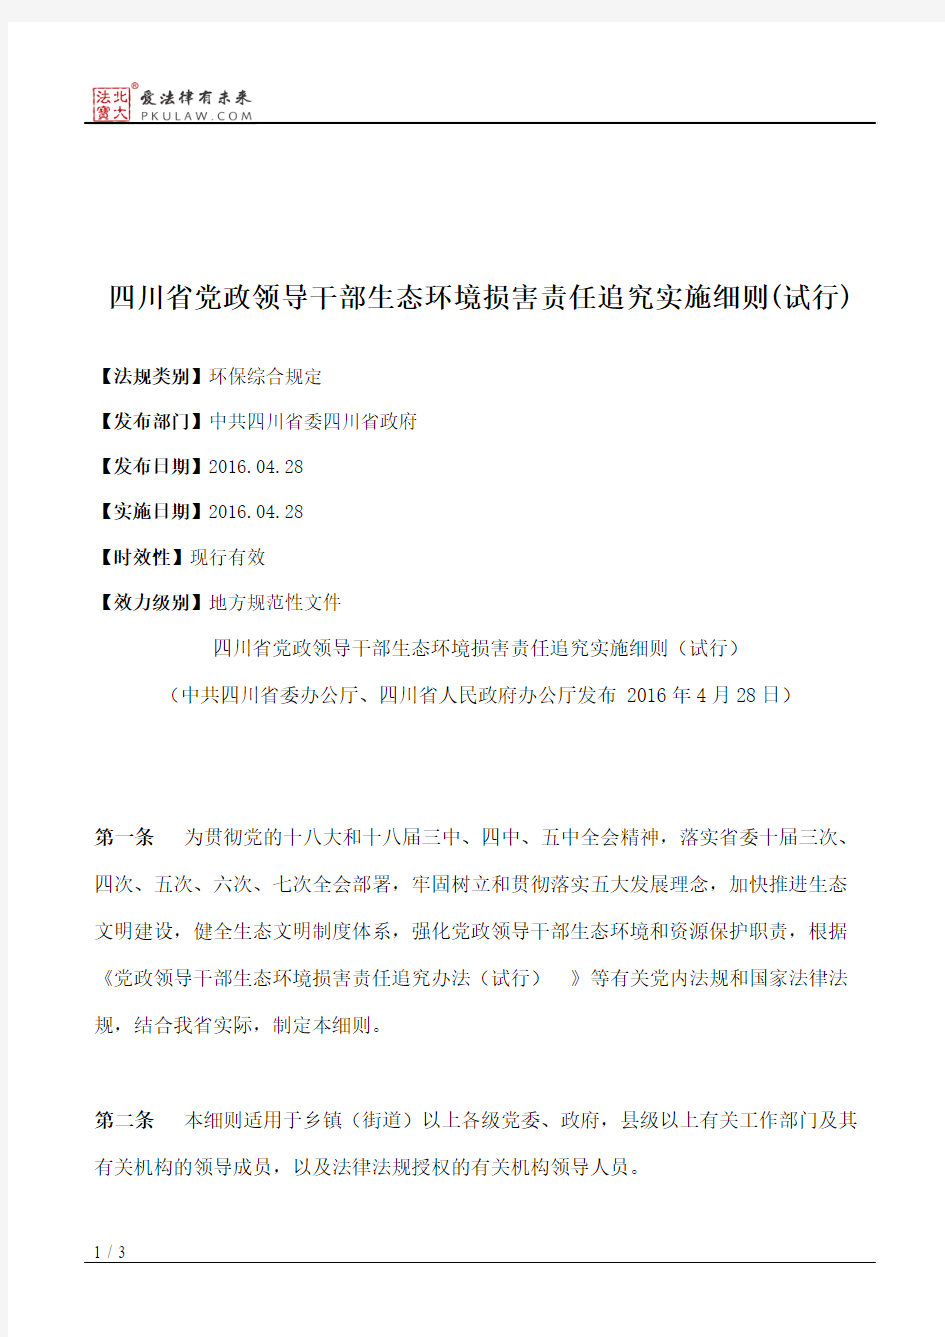 四川省党政领导干部生态环境损害责任追究实施细则(试行)